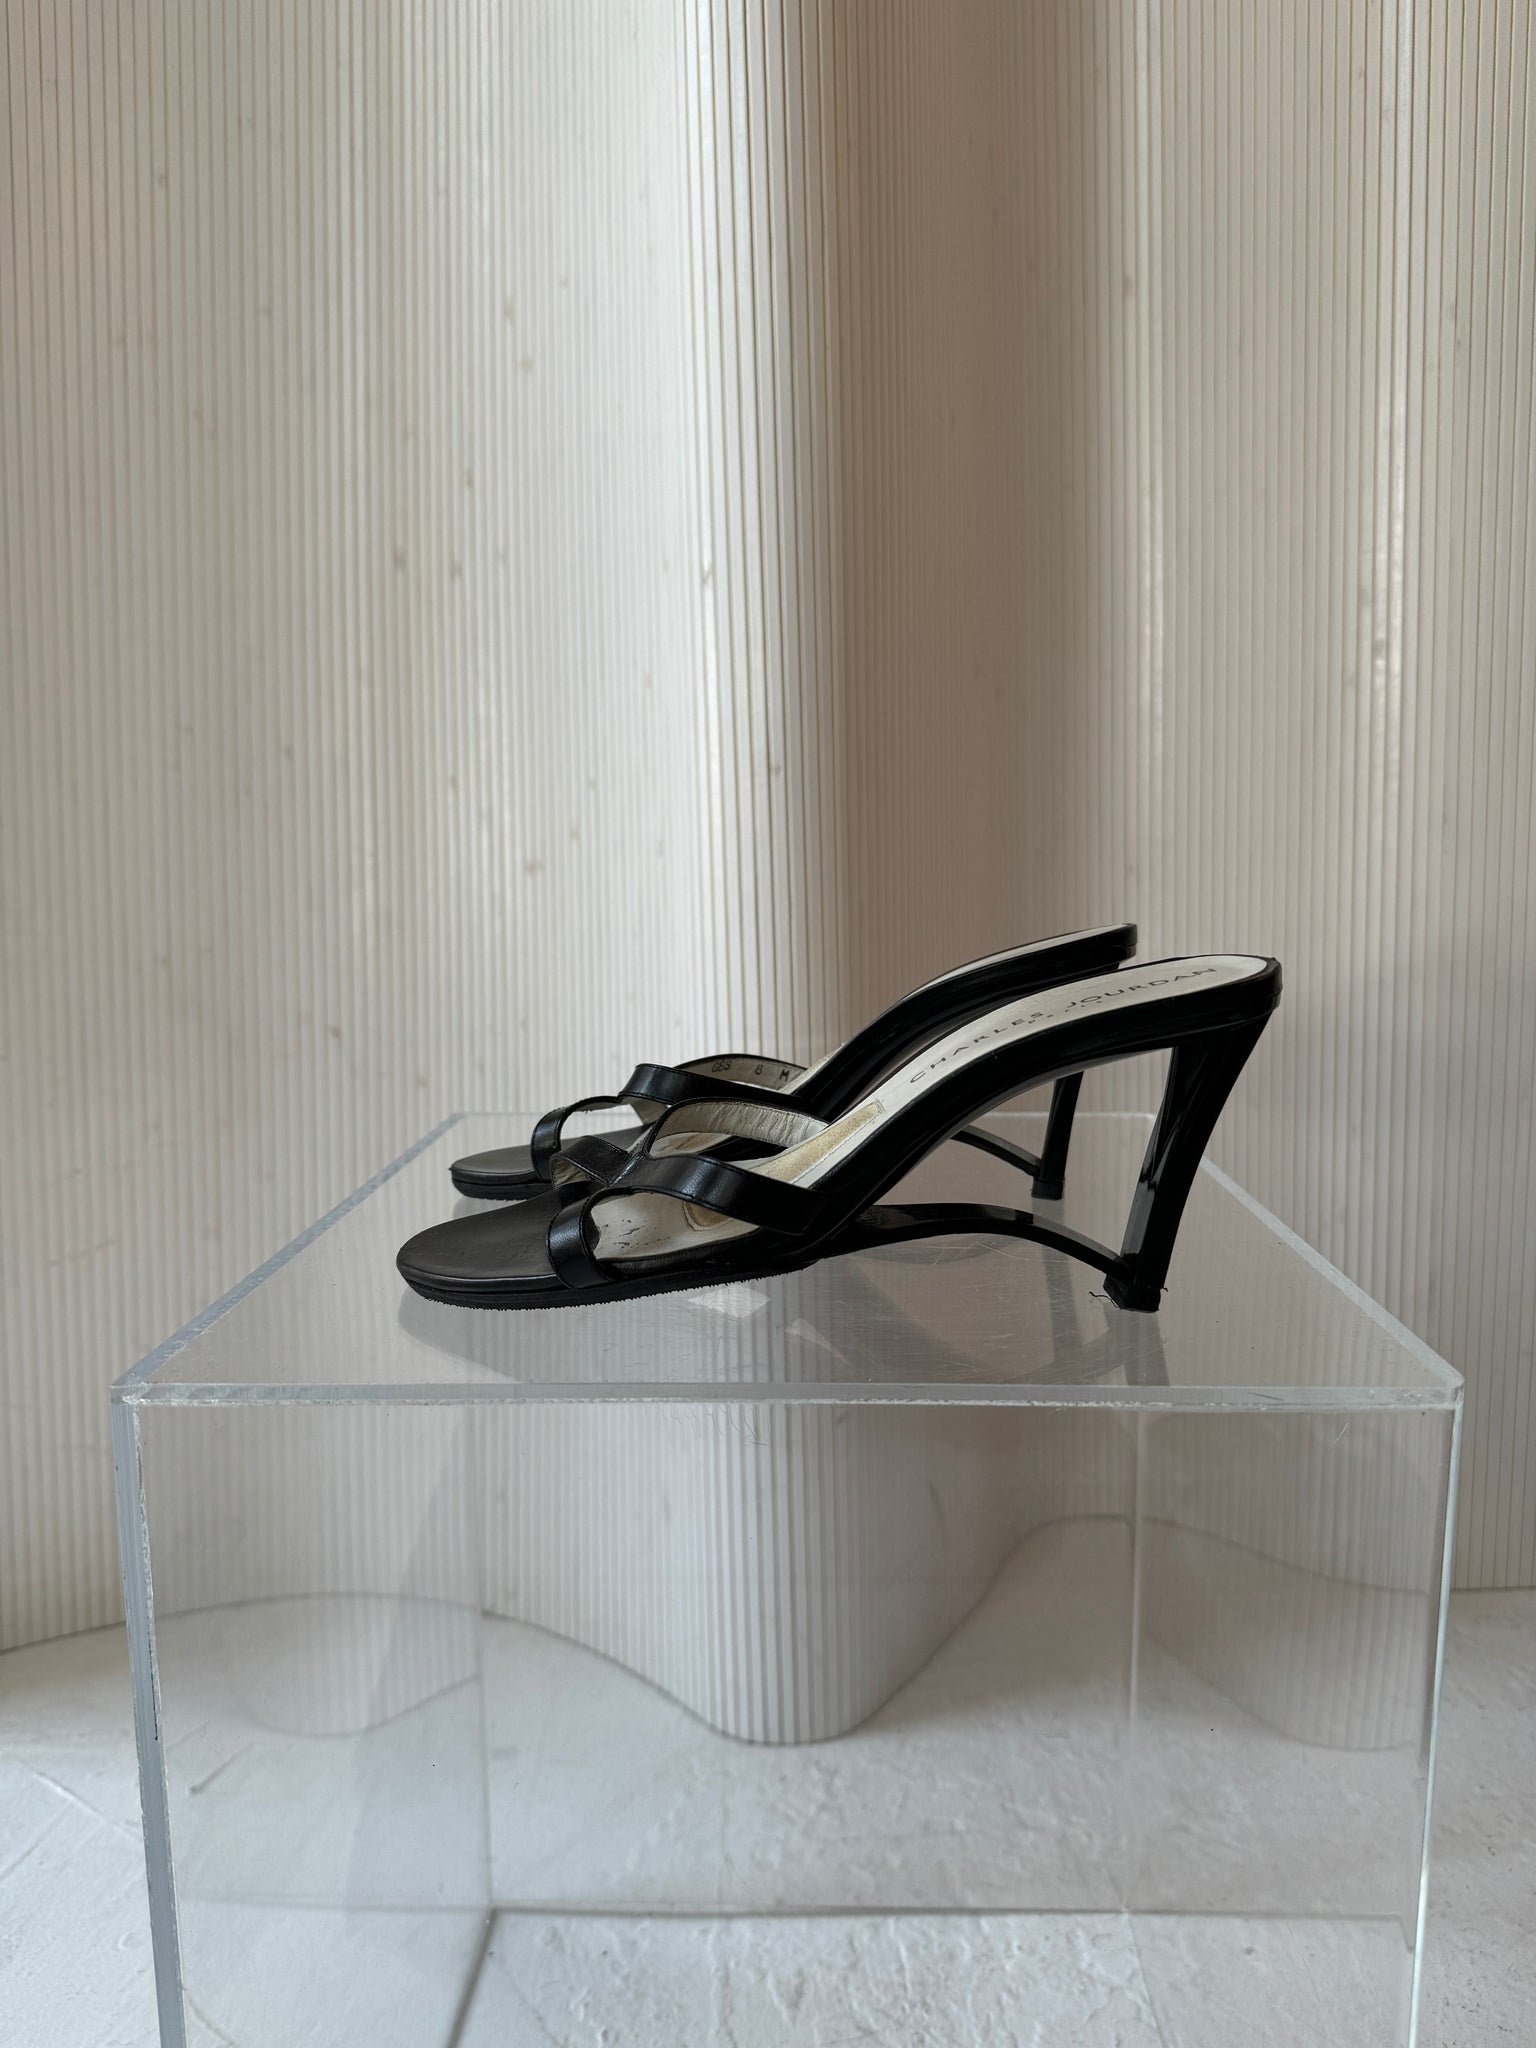 Charles Jourdan black leather heel